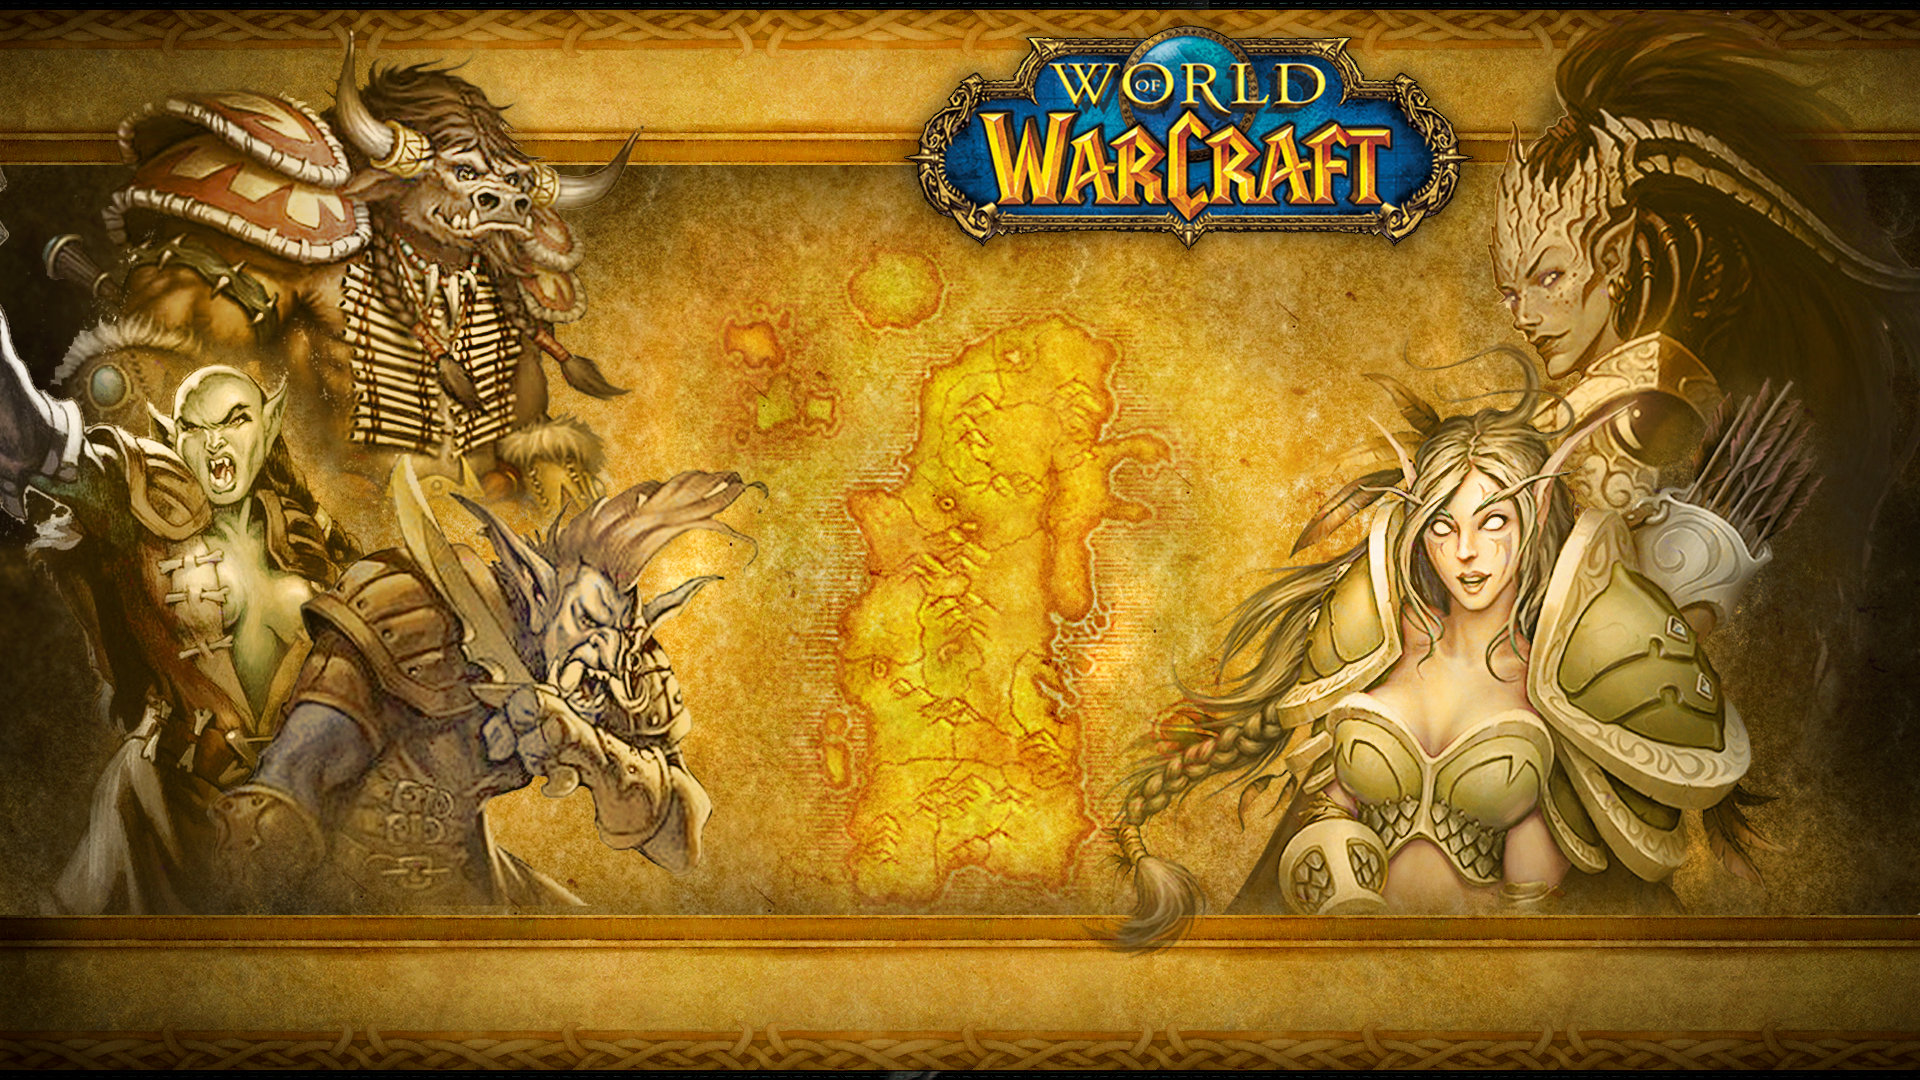 World of warcraft: the burning crusade — warcraft wiki